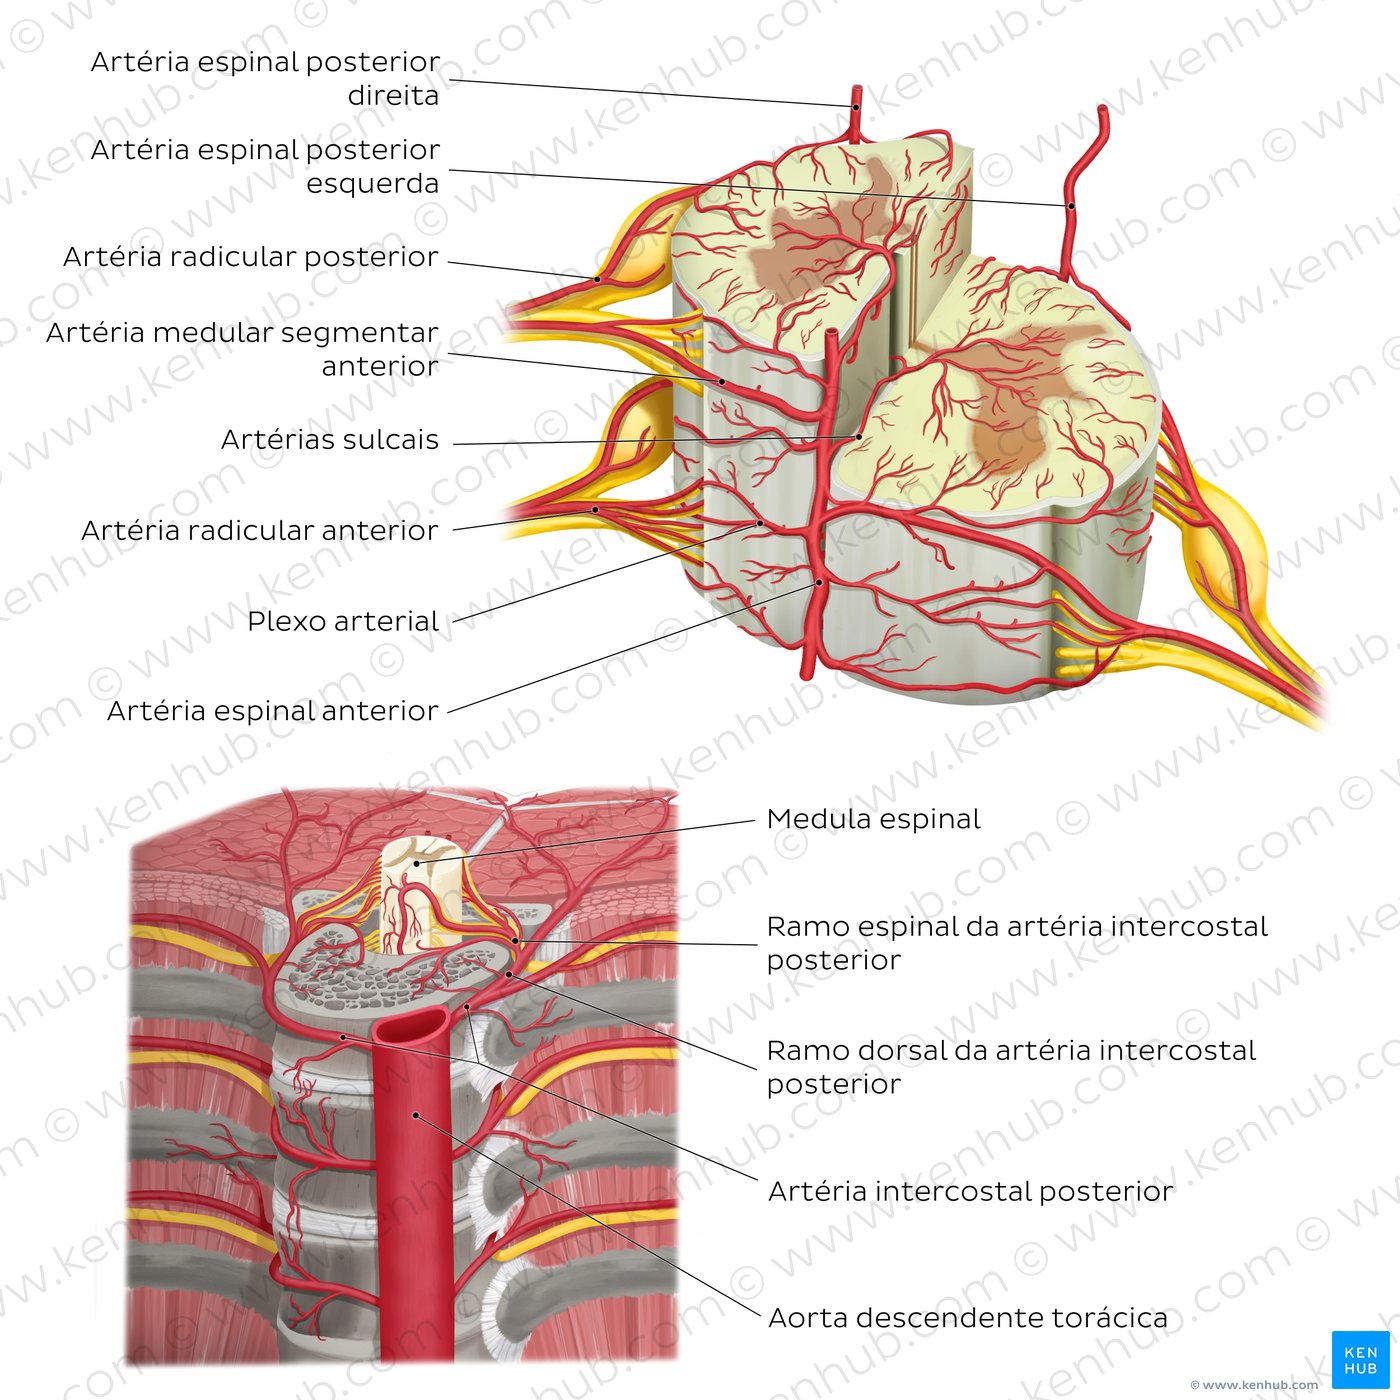 Artérias da medula espinal